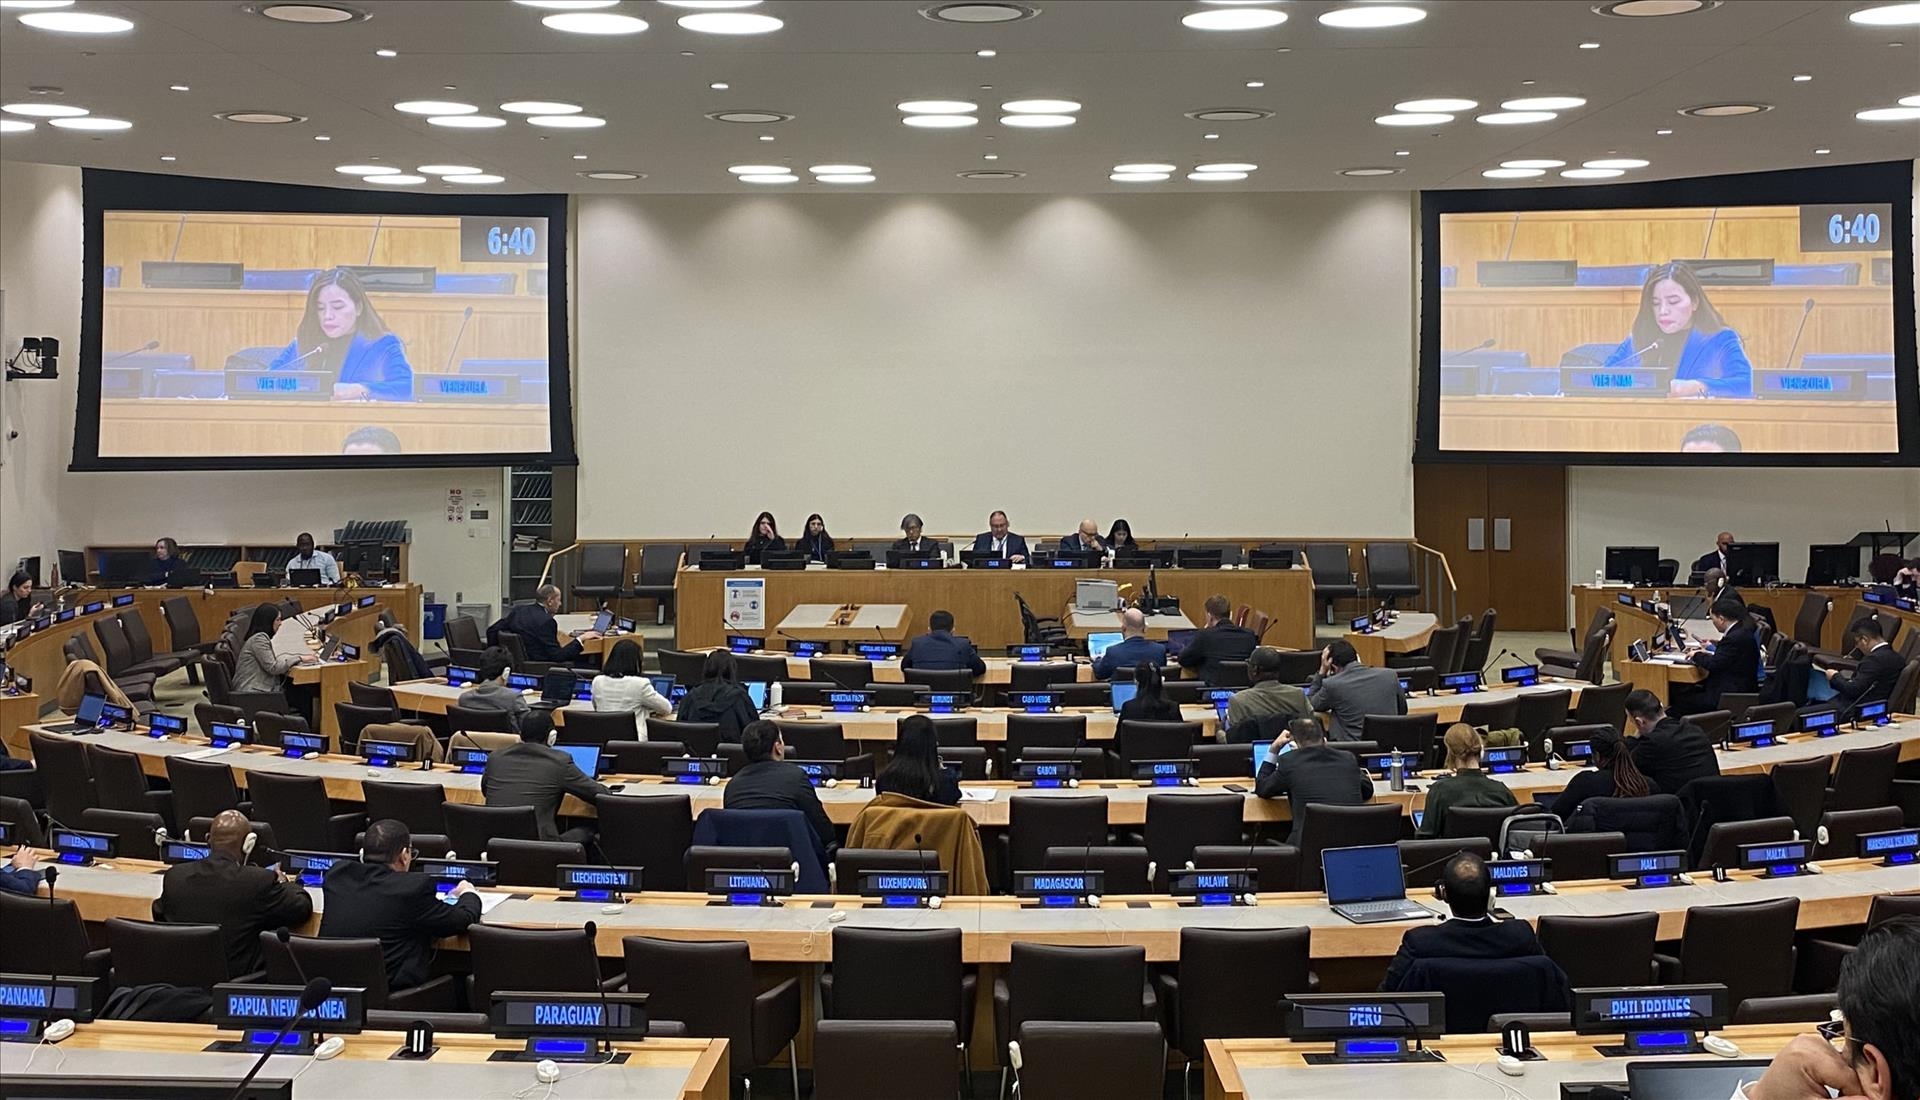 联合国裁军委员会年会4日在美国纽约开幕。越南常驻联合国代表团副团长黎氏明钗在会议上发表讲话。